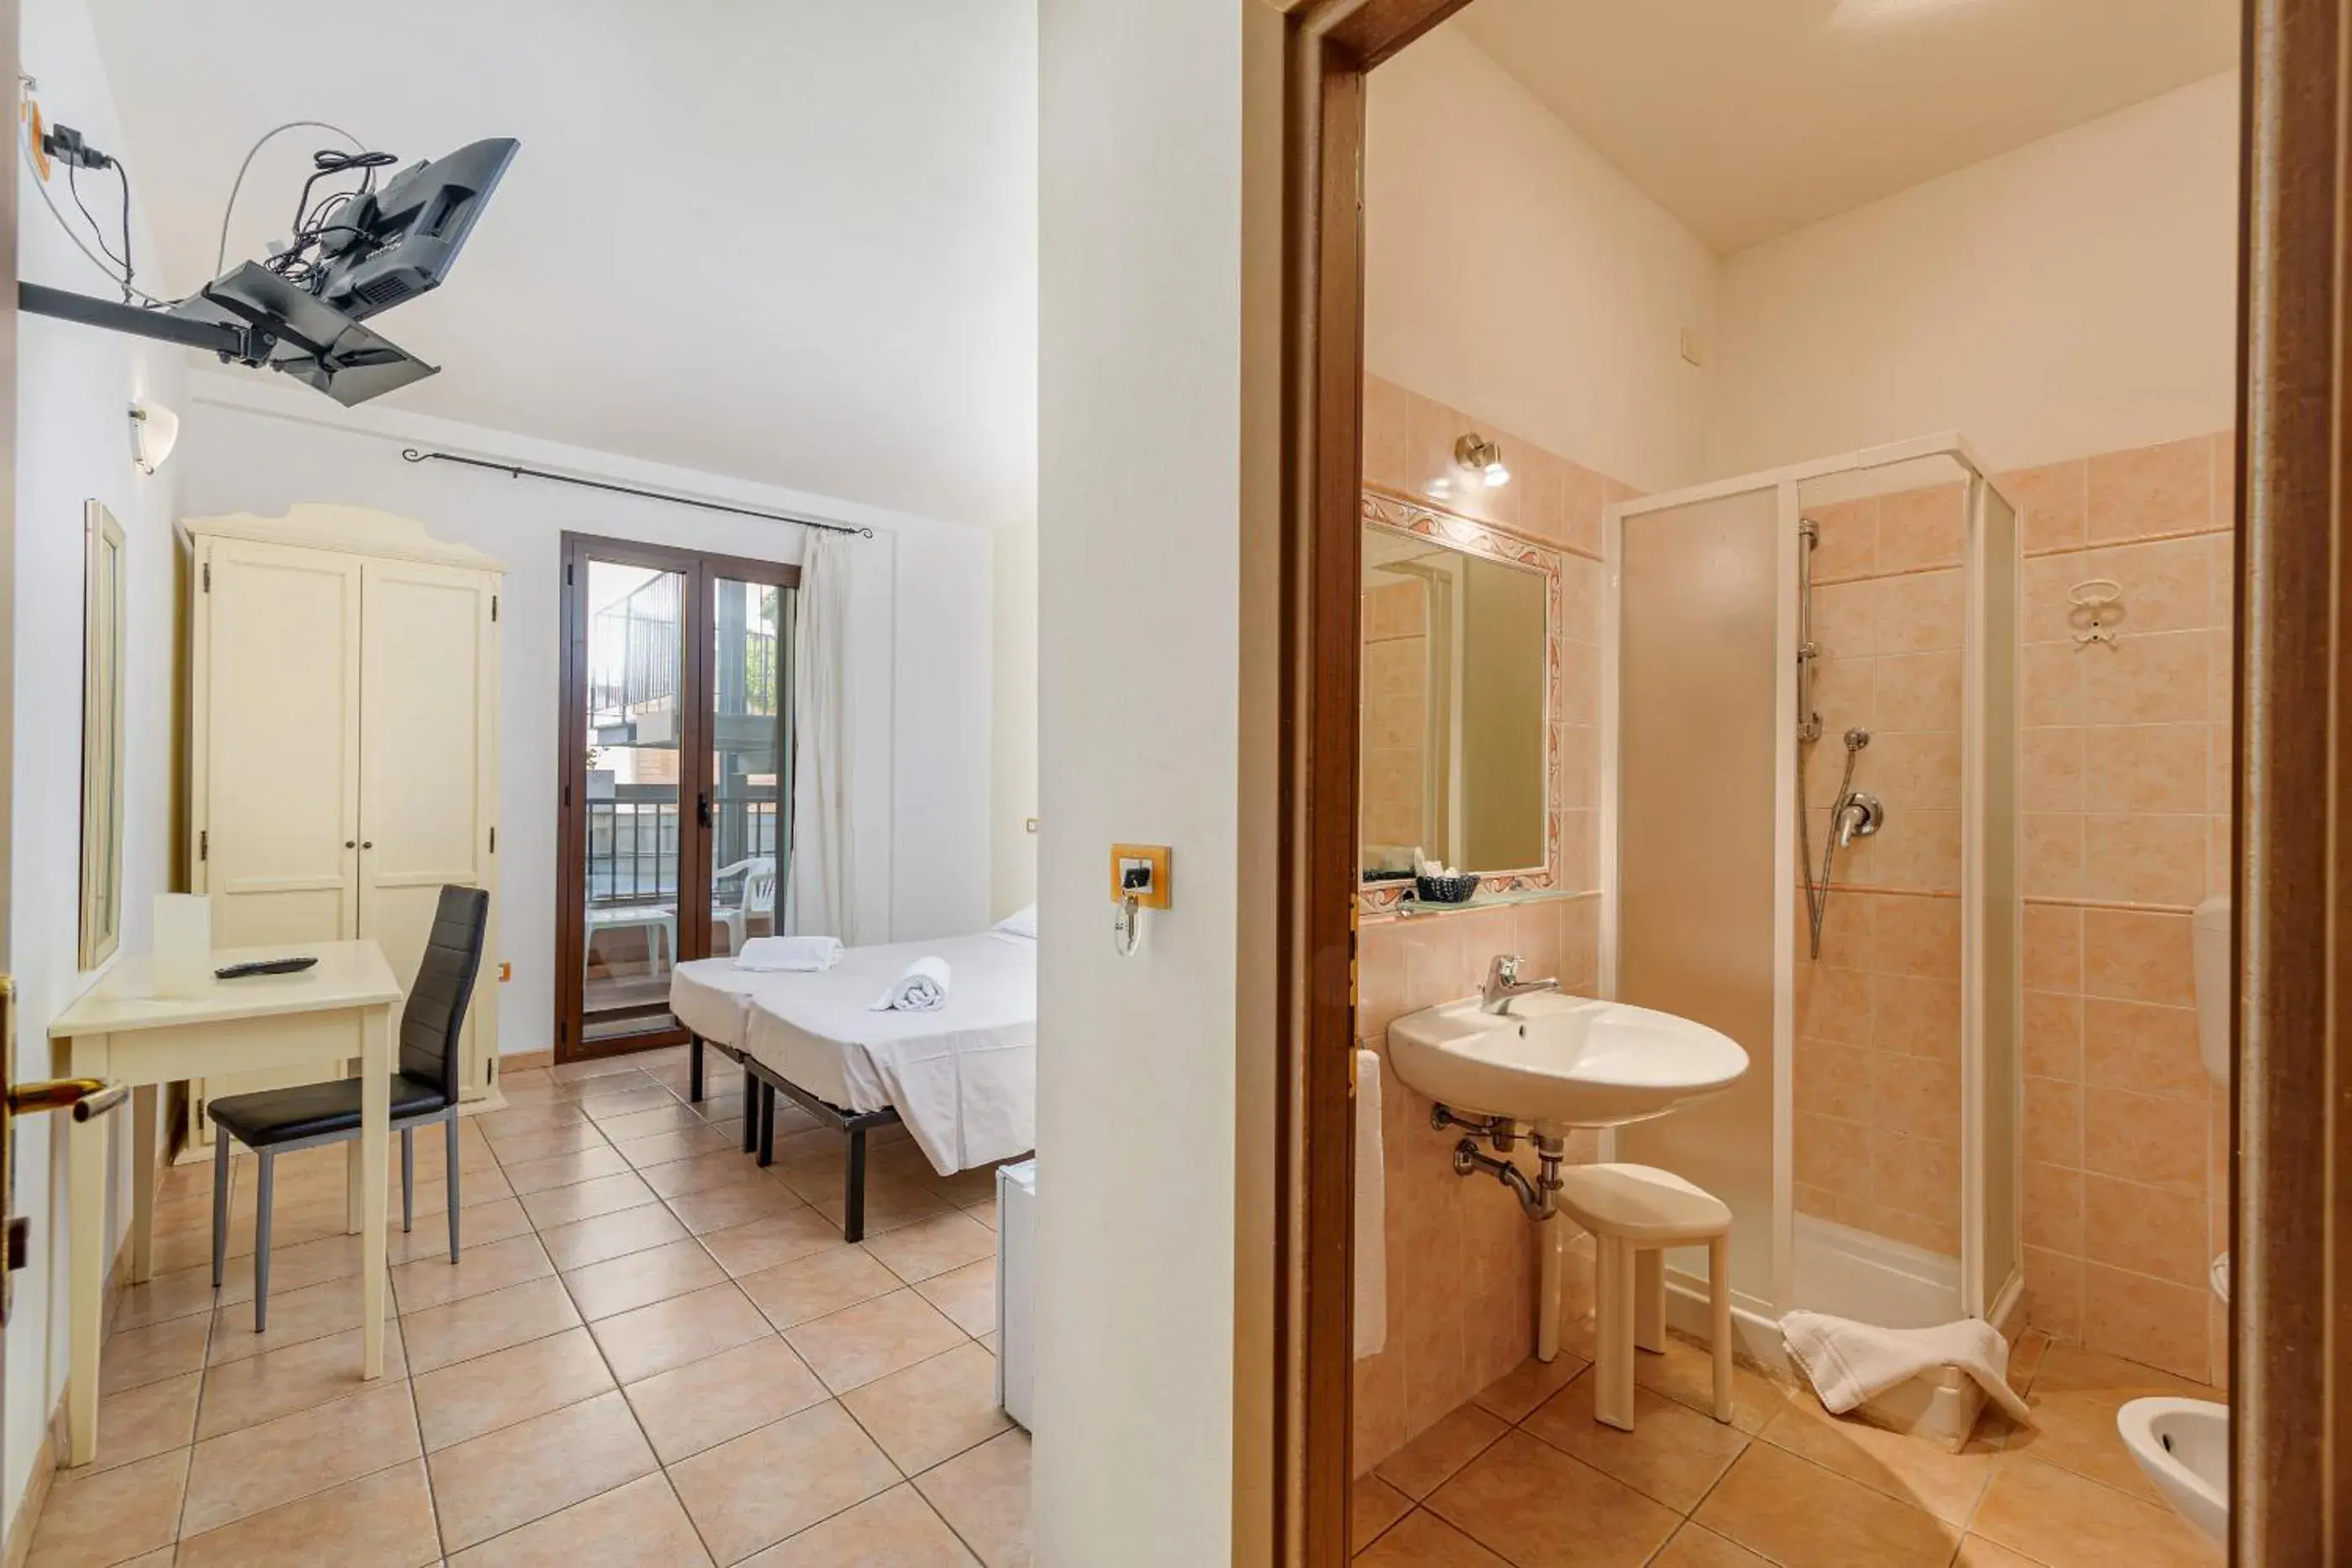 Bathroom in Hotel Villa Piras